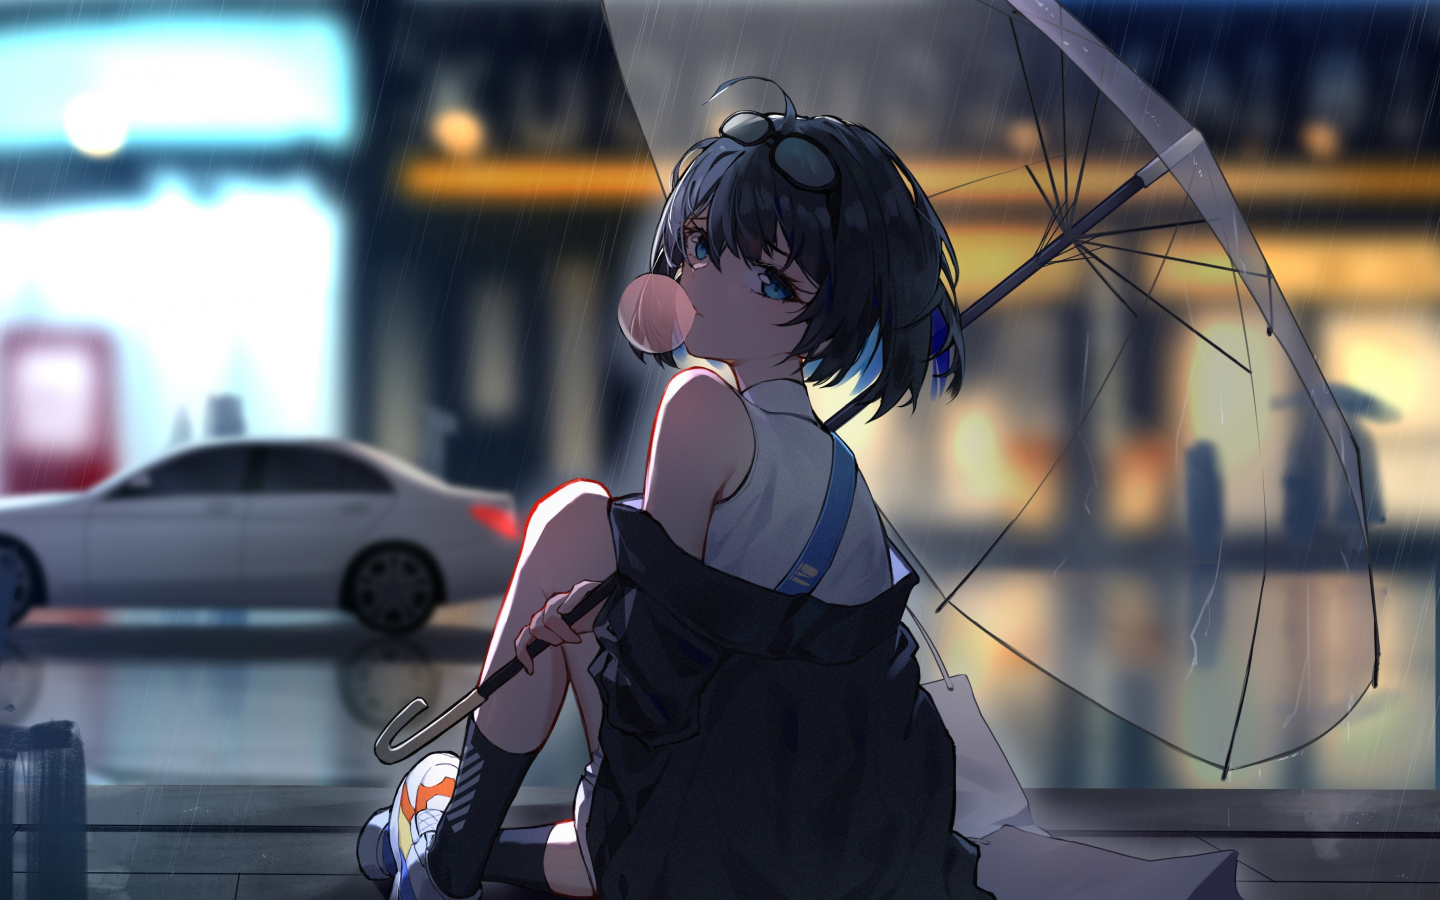 Download wallpaper 1440x900 enjoying rain, anime girl, 1440x900 widescreen  16:10 hd background, 25093